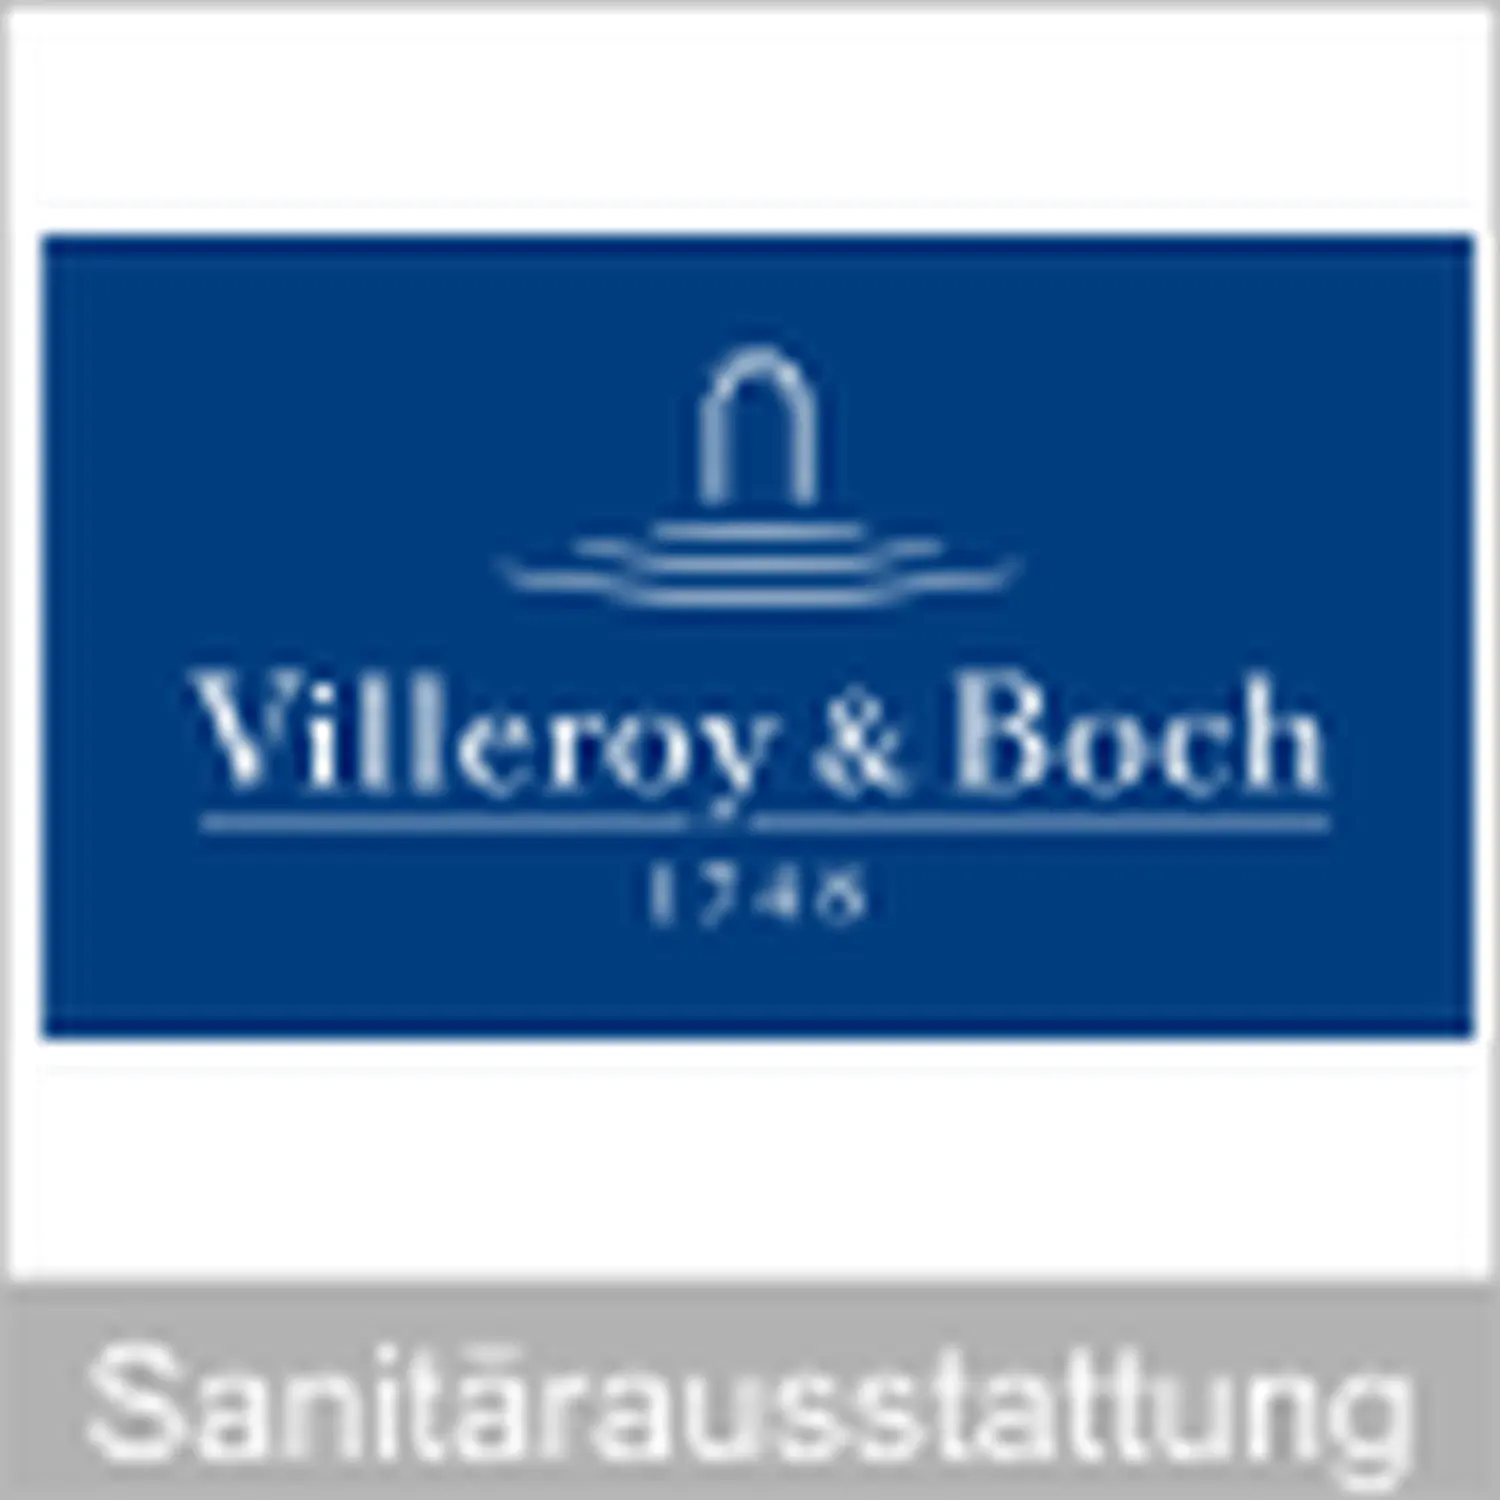 villeroyboch logo